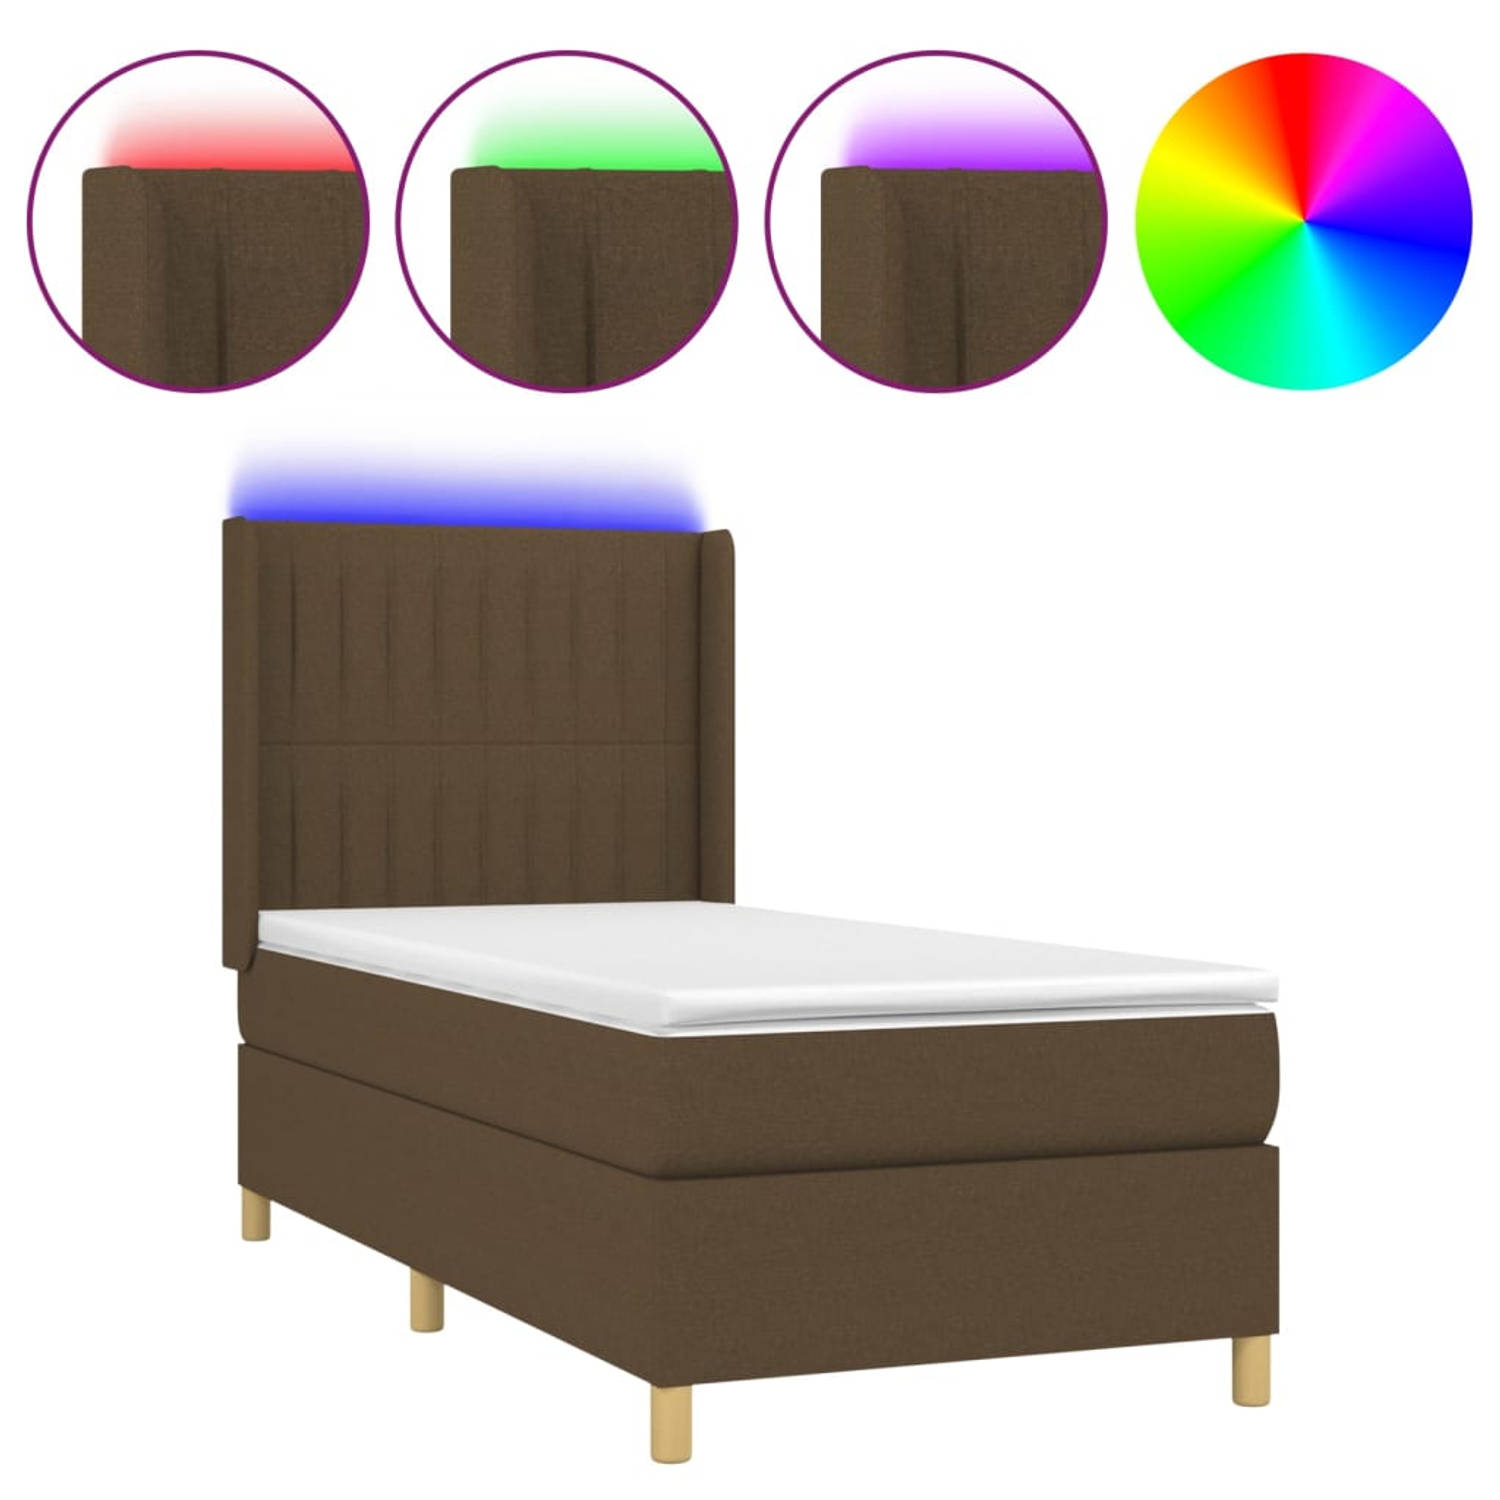 The Living Store Bed - Donkerbruin - 203 x 103 x 118/128 cm - PVC stof - Verstelbaar hoofdbord - Pocketvering matras - Huidvriendelijk topmatras - Kleurrijke LED-verlichting